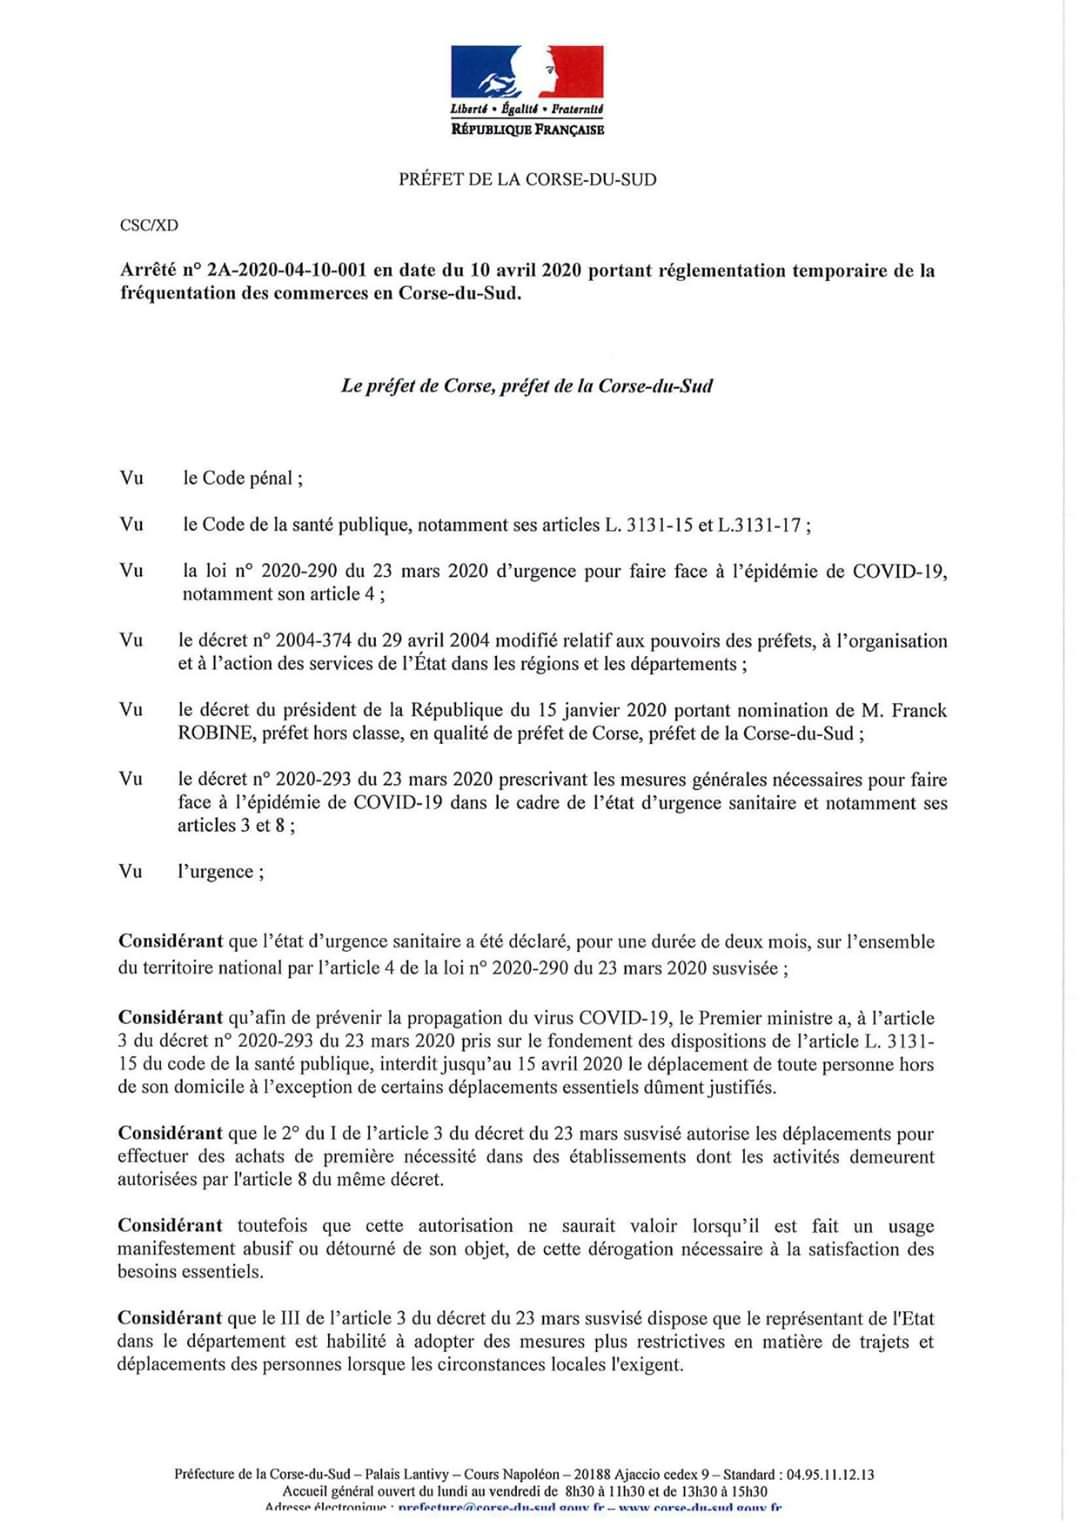 Arrêté du 10 avril portant réglementation temporaire de la fréquentation des commerces en Corse du Sud